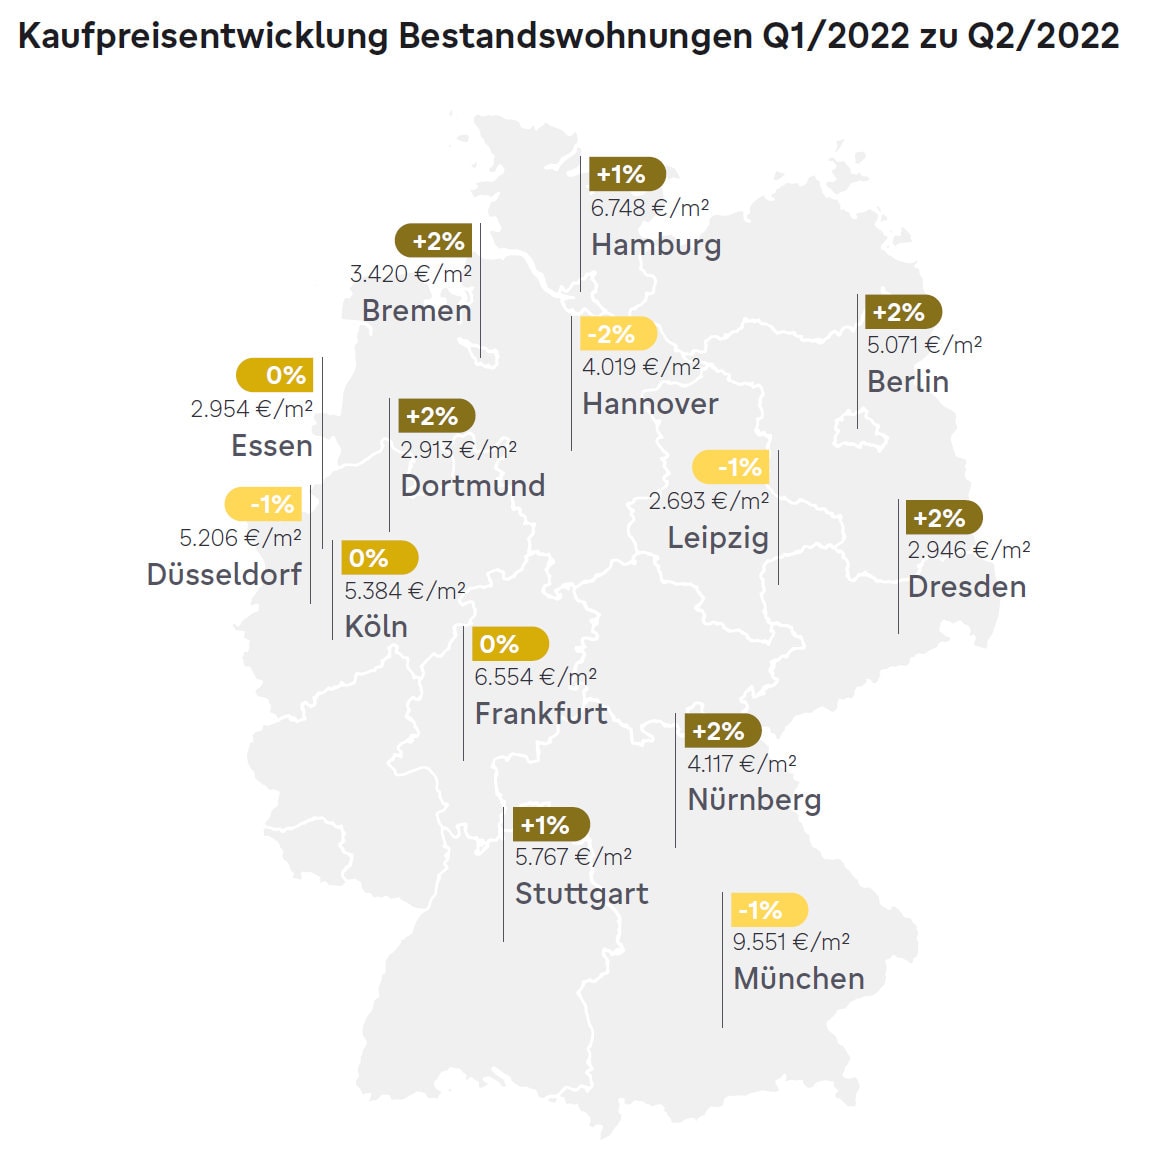 Kaufpreise für Wohnungen in 14 deutschen Städten (Quelle: Immowelt)